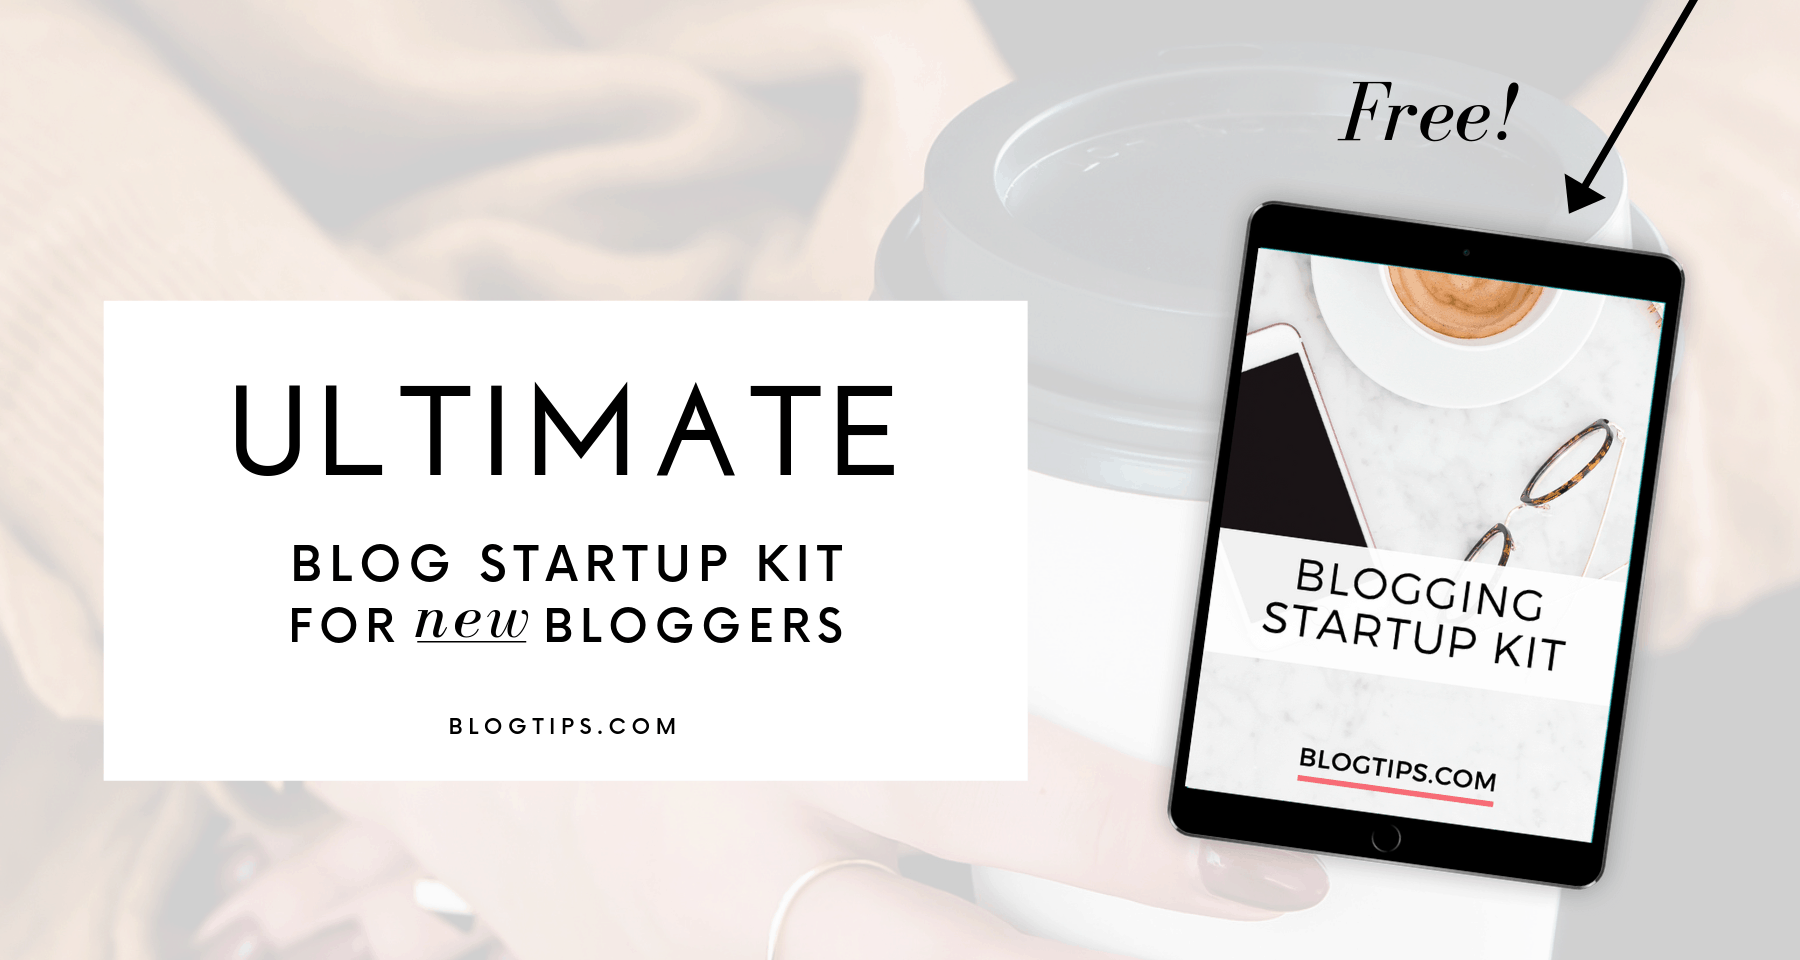 Free blogging startup kit for new bloggers blog tips starting a blog how to start a blog free blogging ebook blogging PDF BlogTips.com